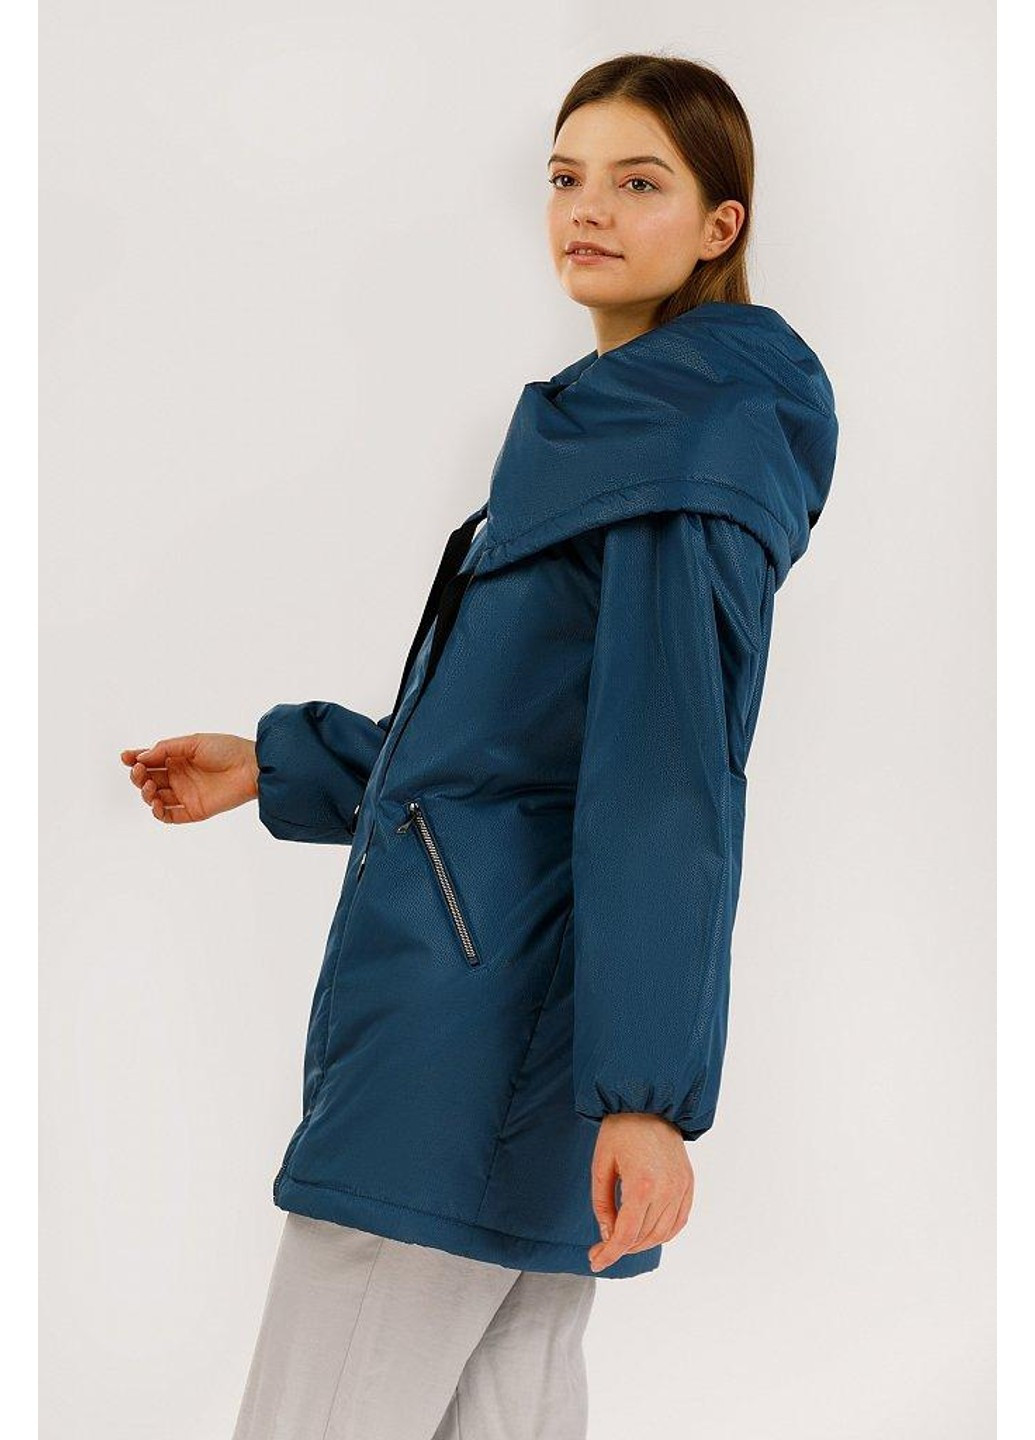 Темно-синяя демисезонная куртка b20-12025-140 Finn Flare